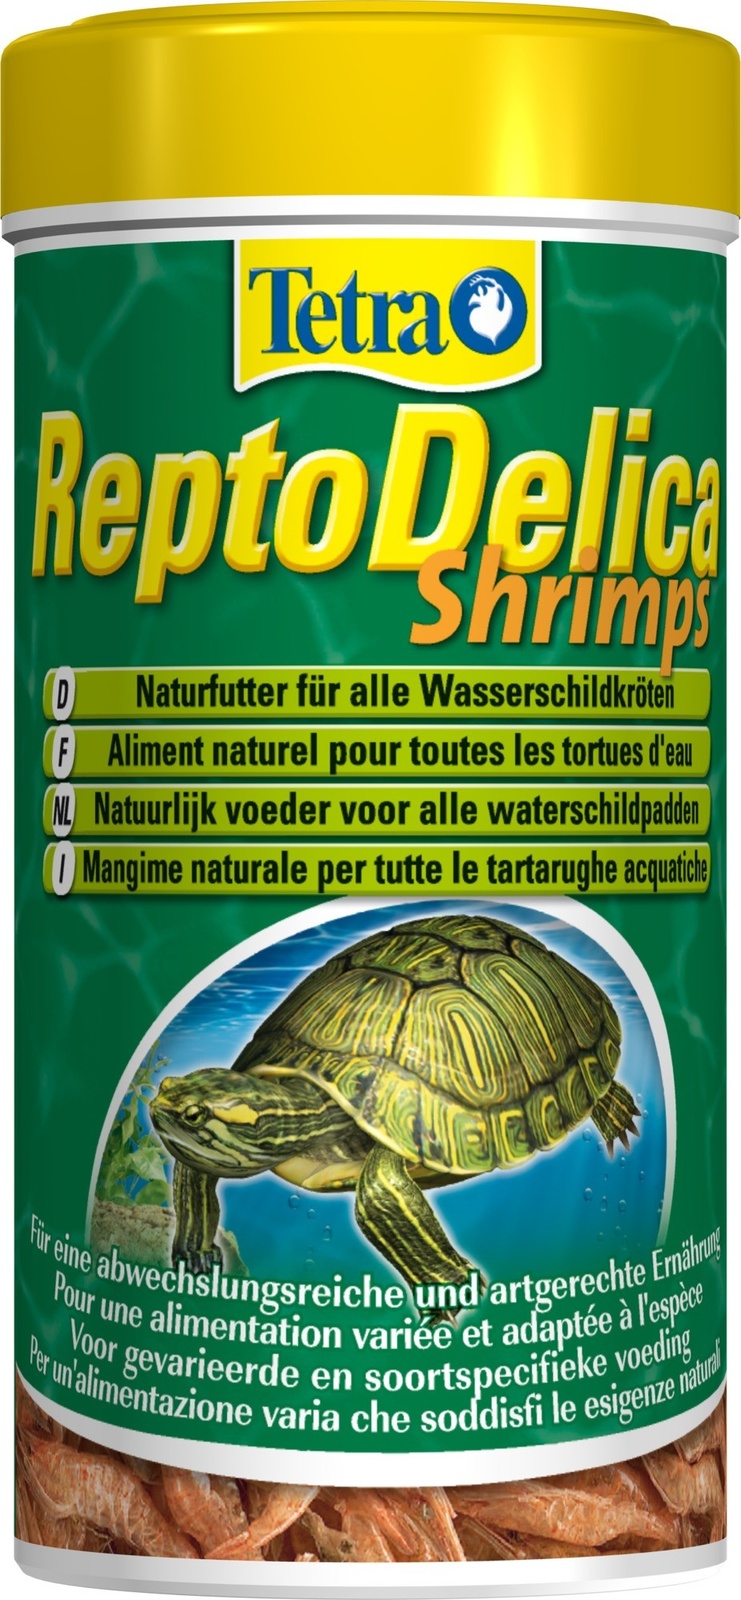 Tetra (корма) Tetra (корма) корм для водных черепах. креветки ReptoDelica Shrimps (20 г)